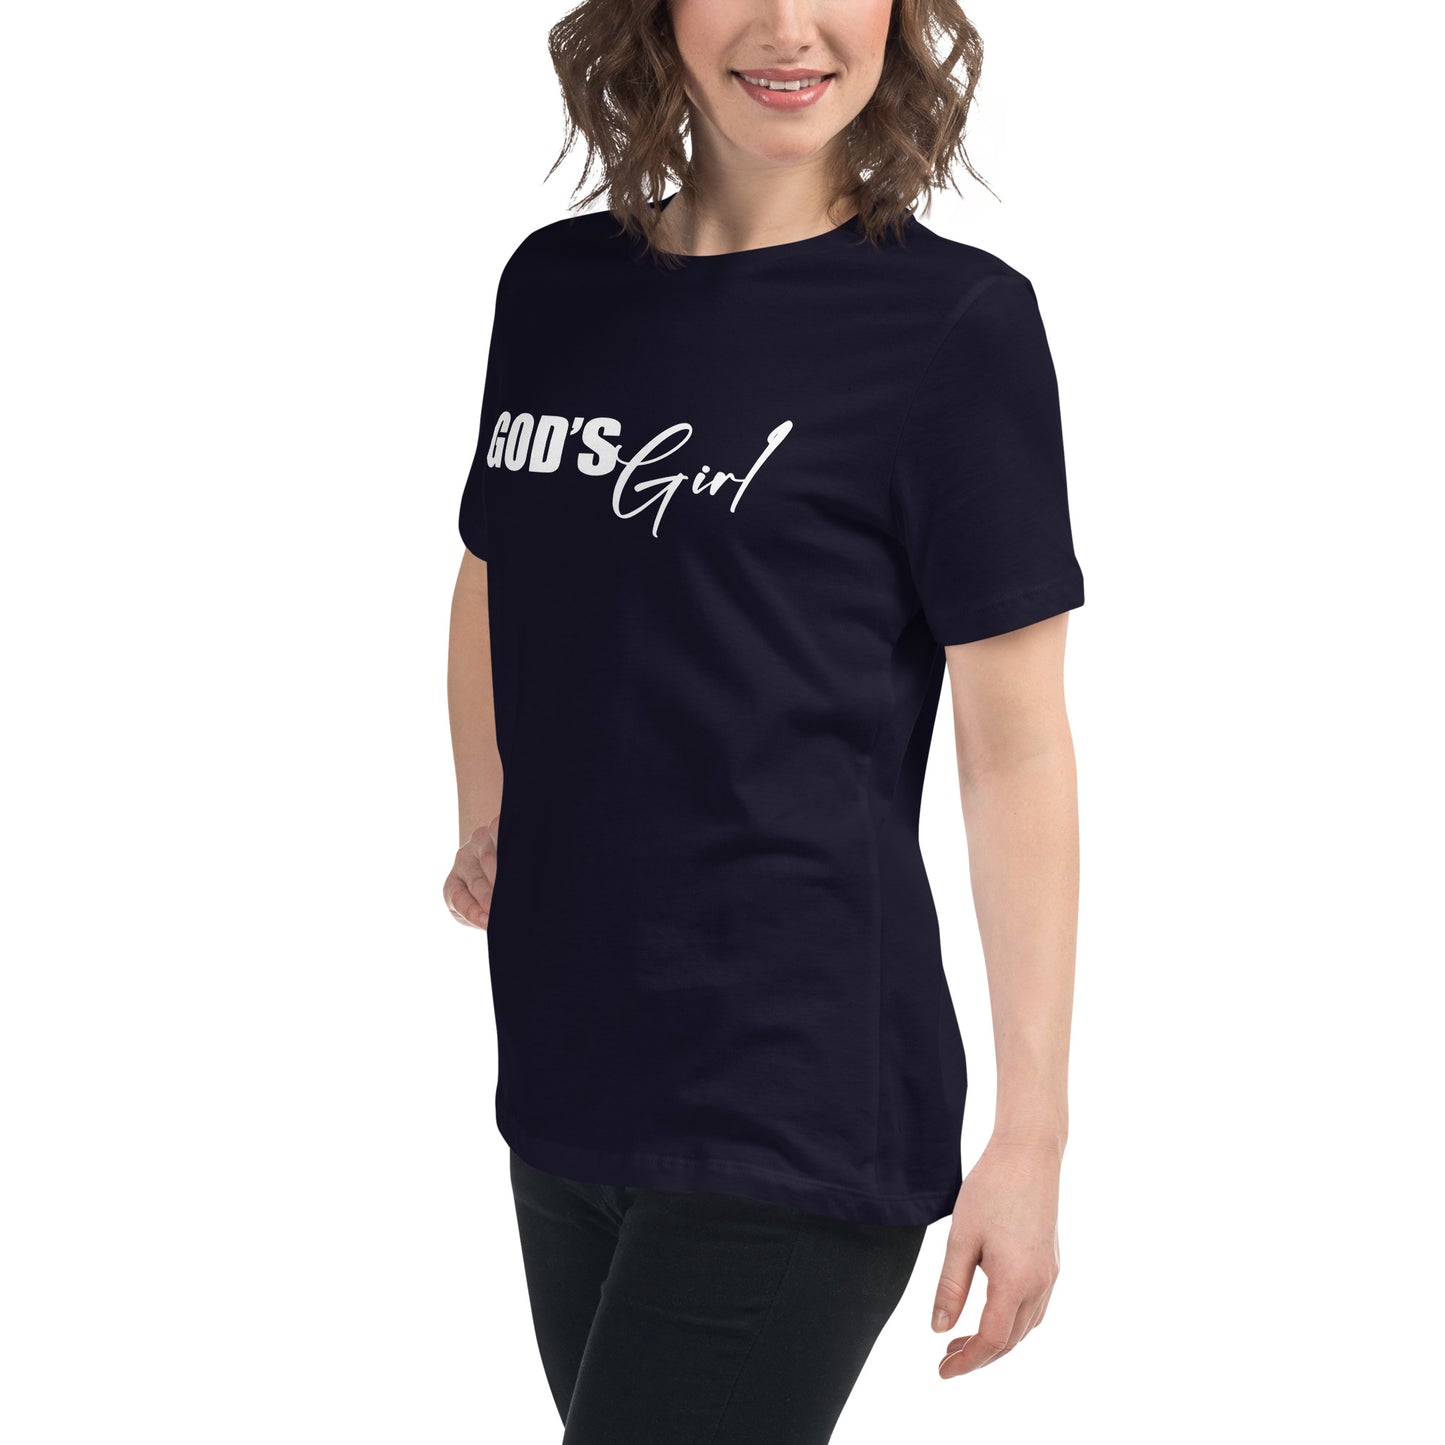 "God's Girl" Women's Relaxed T-Shirt